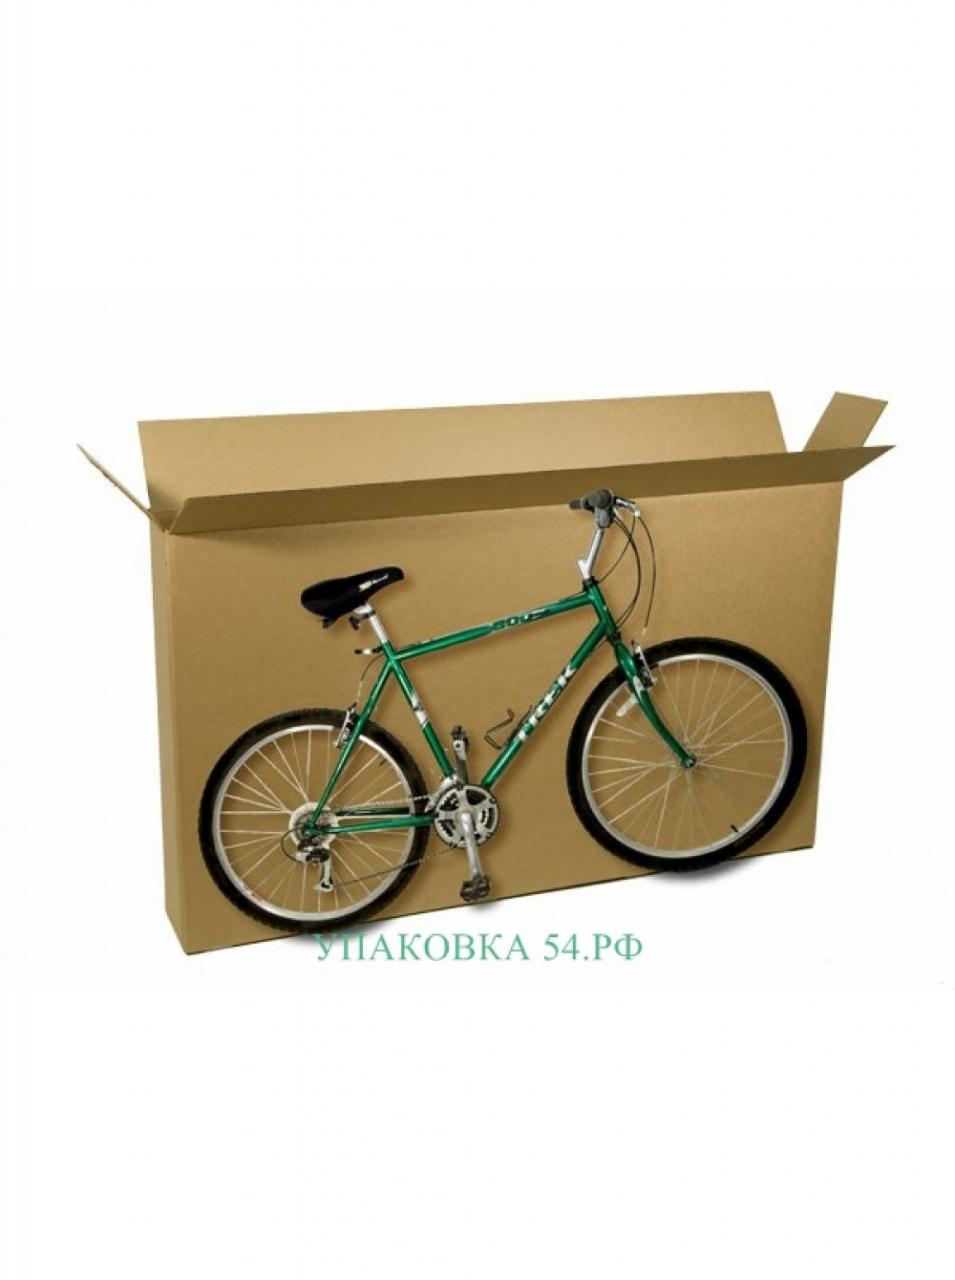 Коробка для хранения велосипеда 135 21 69. Новосибирская обл.